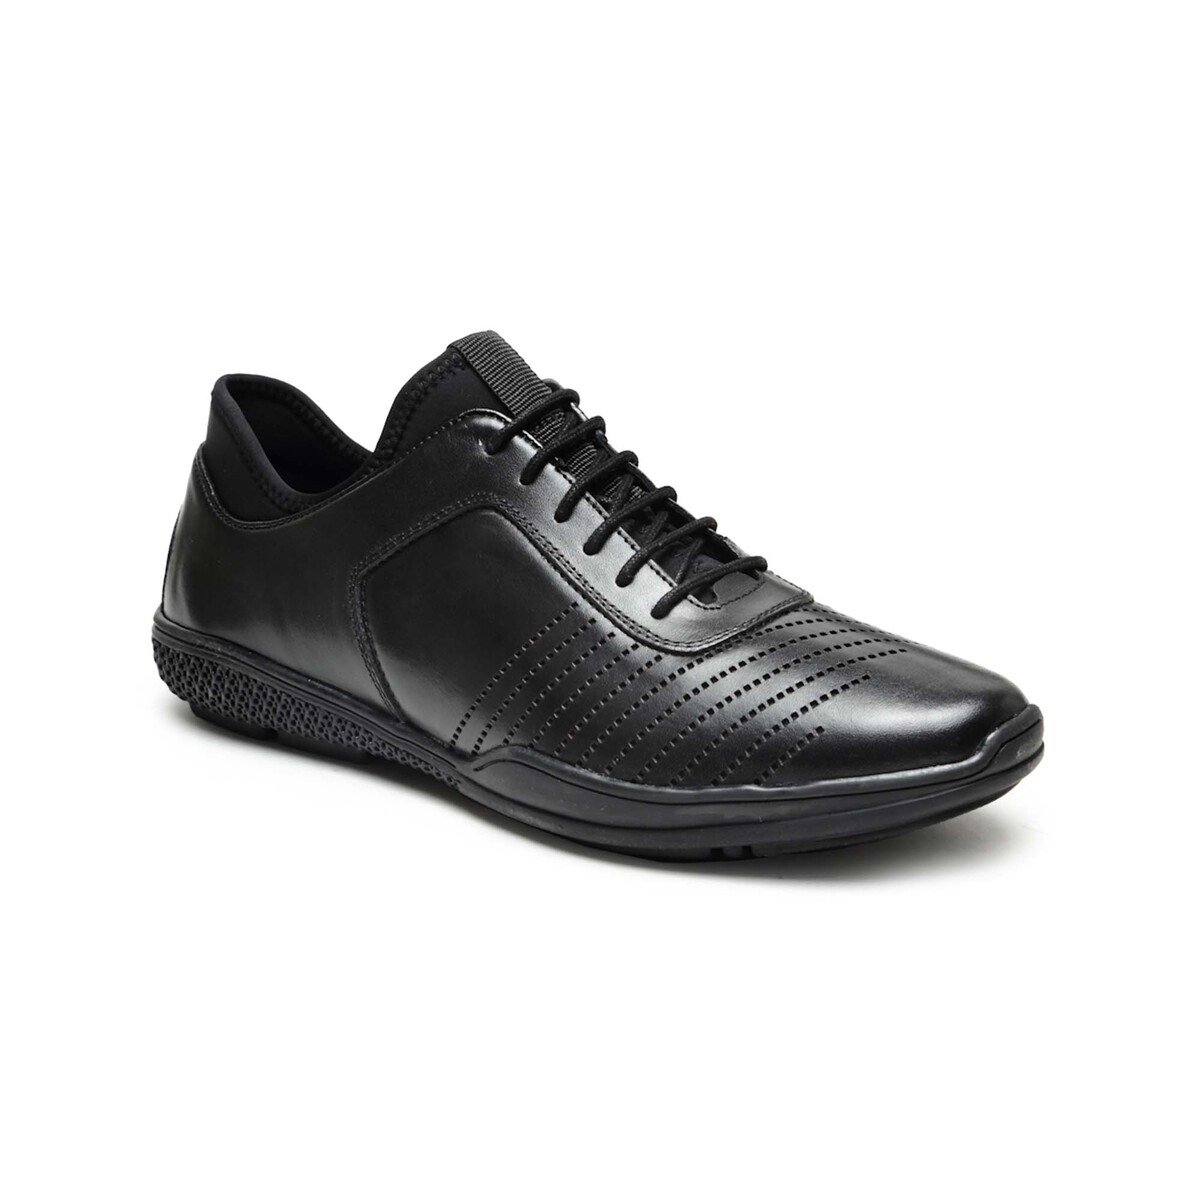 Von Wellx Men's Formal Shoes 76002 Black, 44 Online at Best Price ...